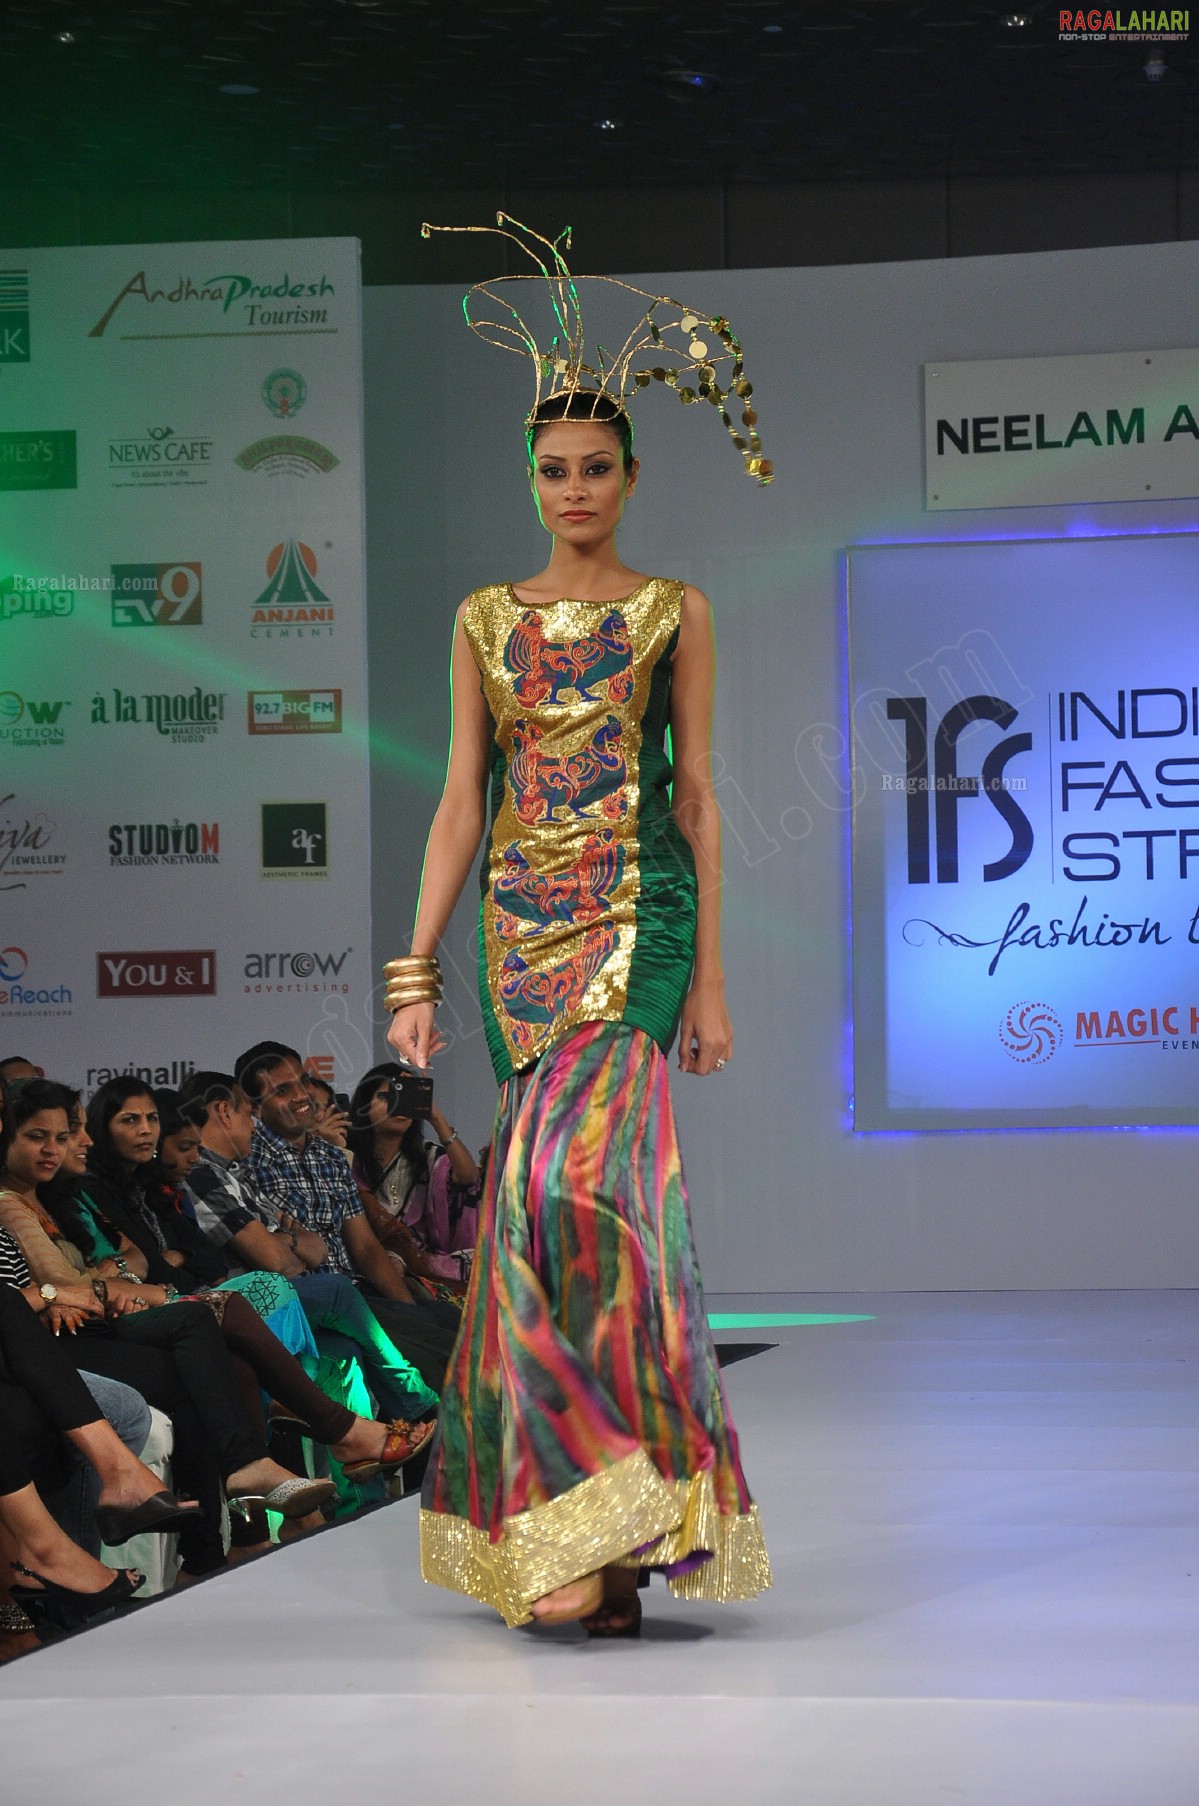 India Fashion Street - Fashion Tour 2012 (Day 2)